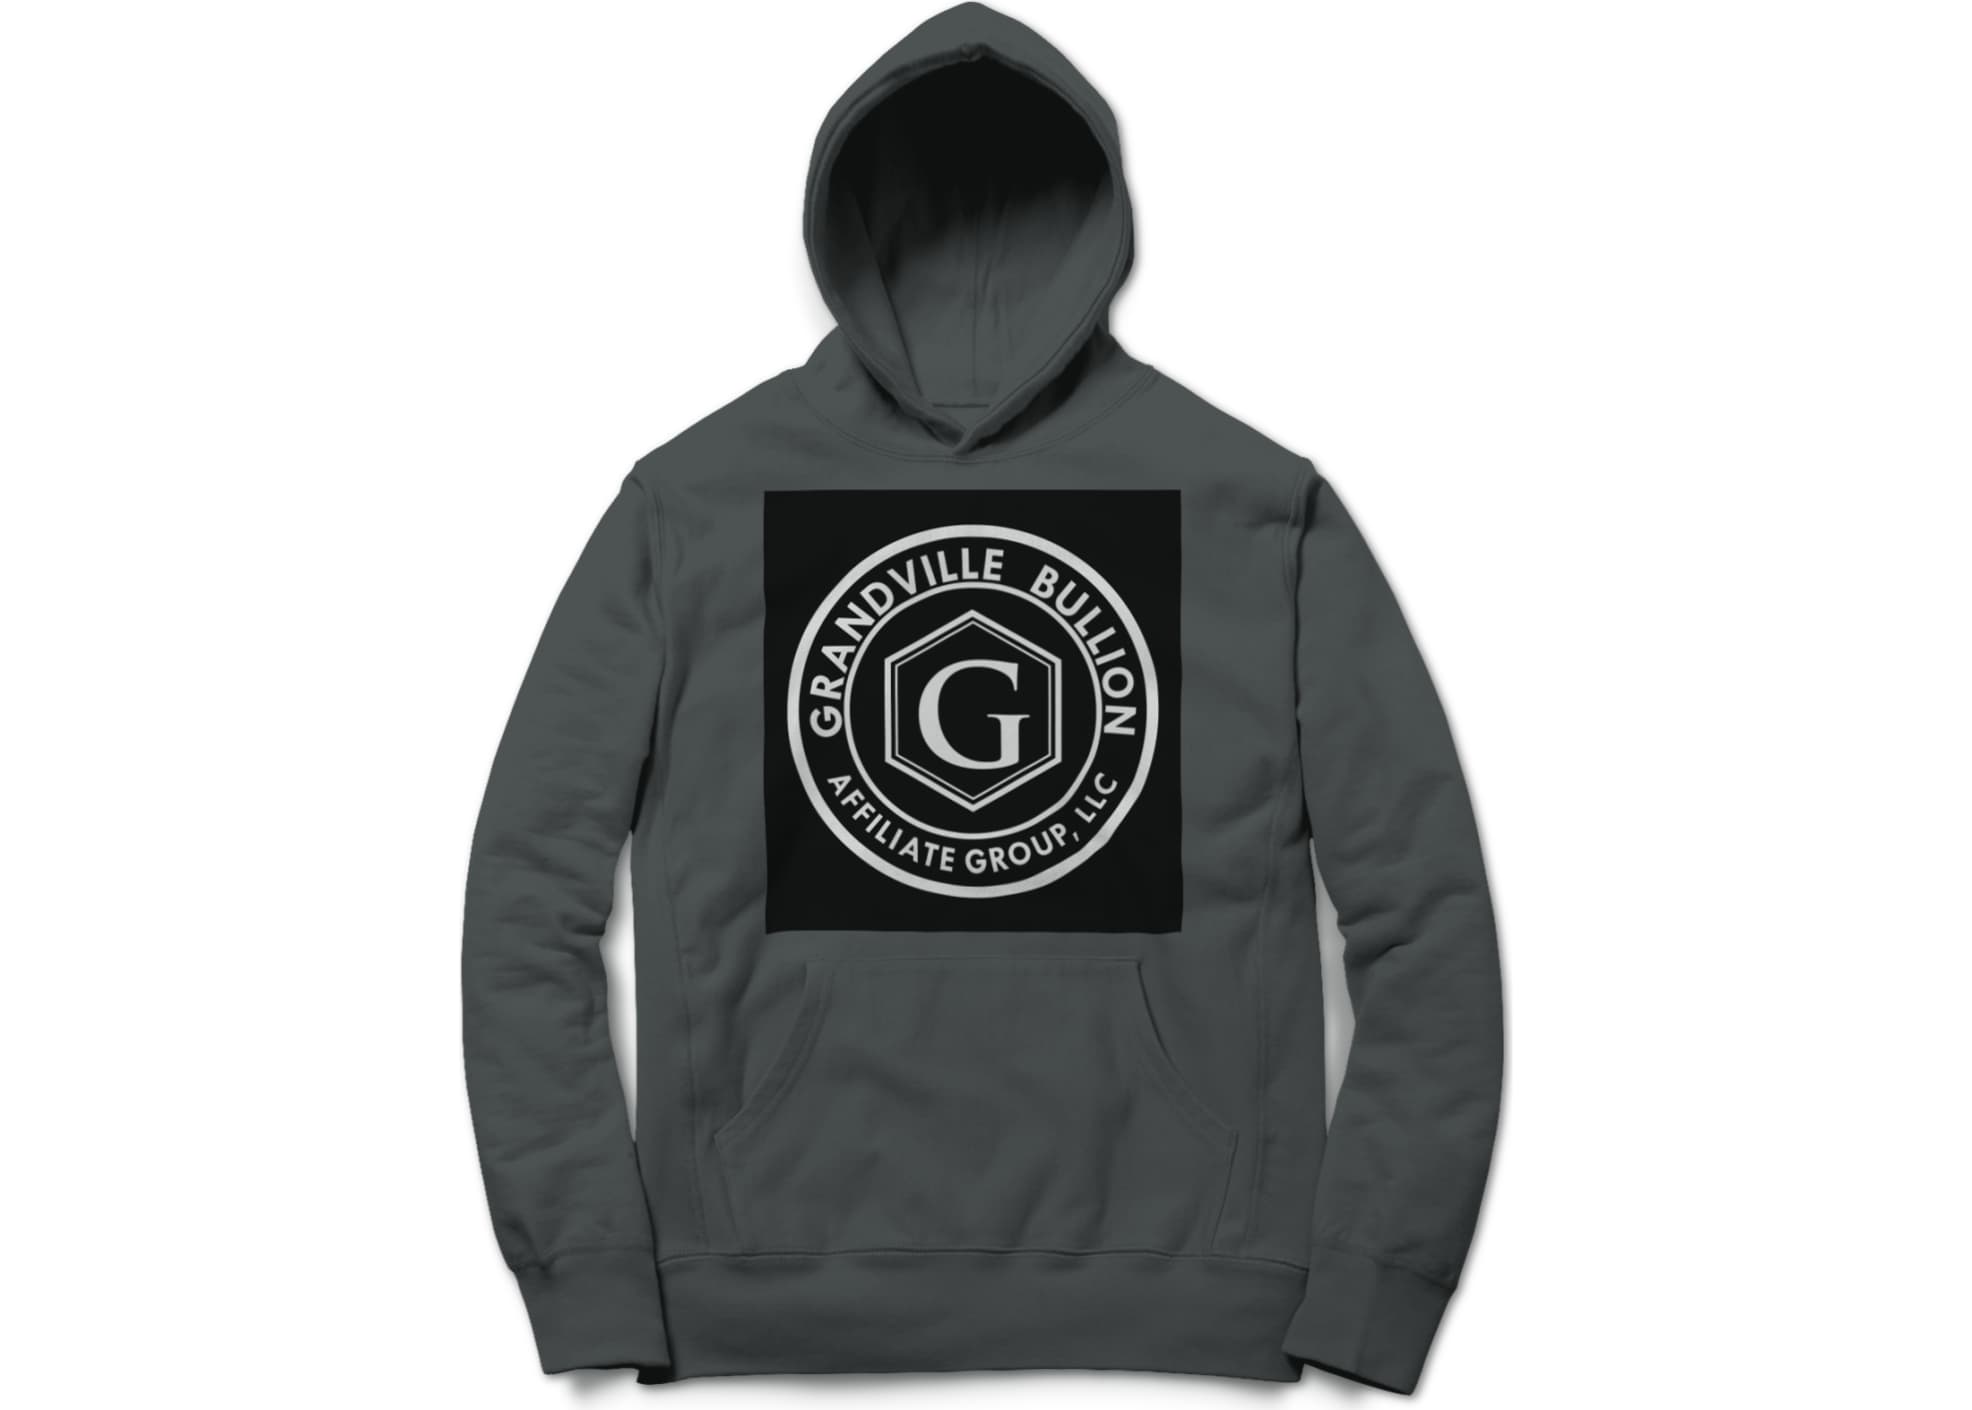 Grandville bullion group llc black and white logo 1629988597